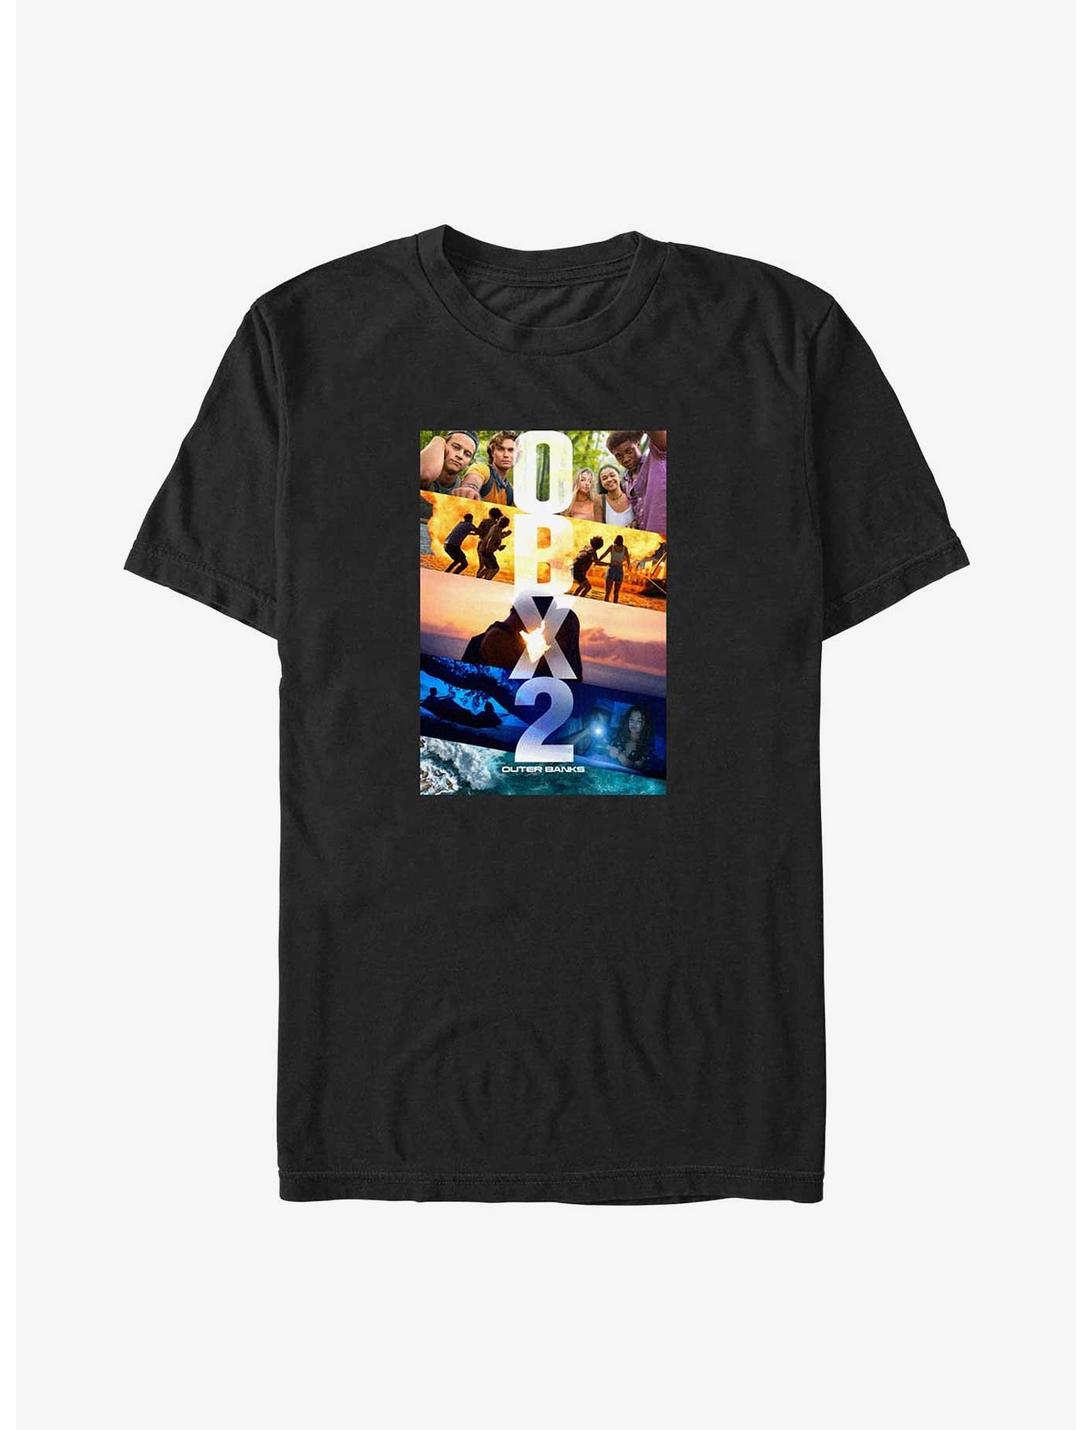 Outer Banks OBX2 Poster T-Shirt, BLACK, hi-res